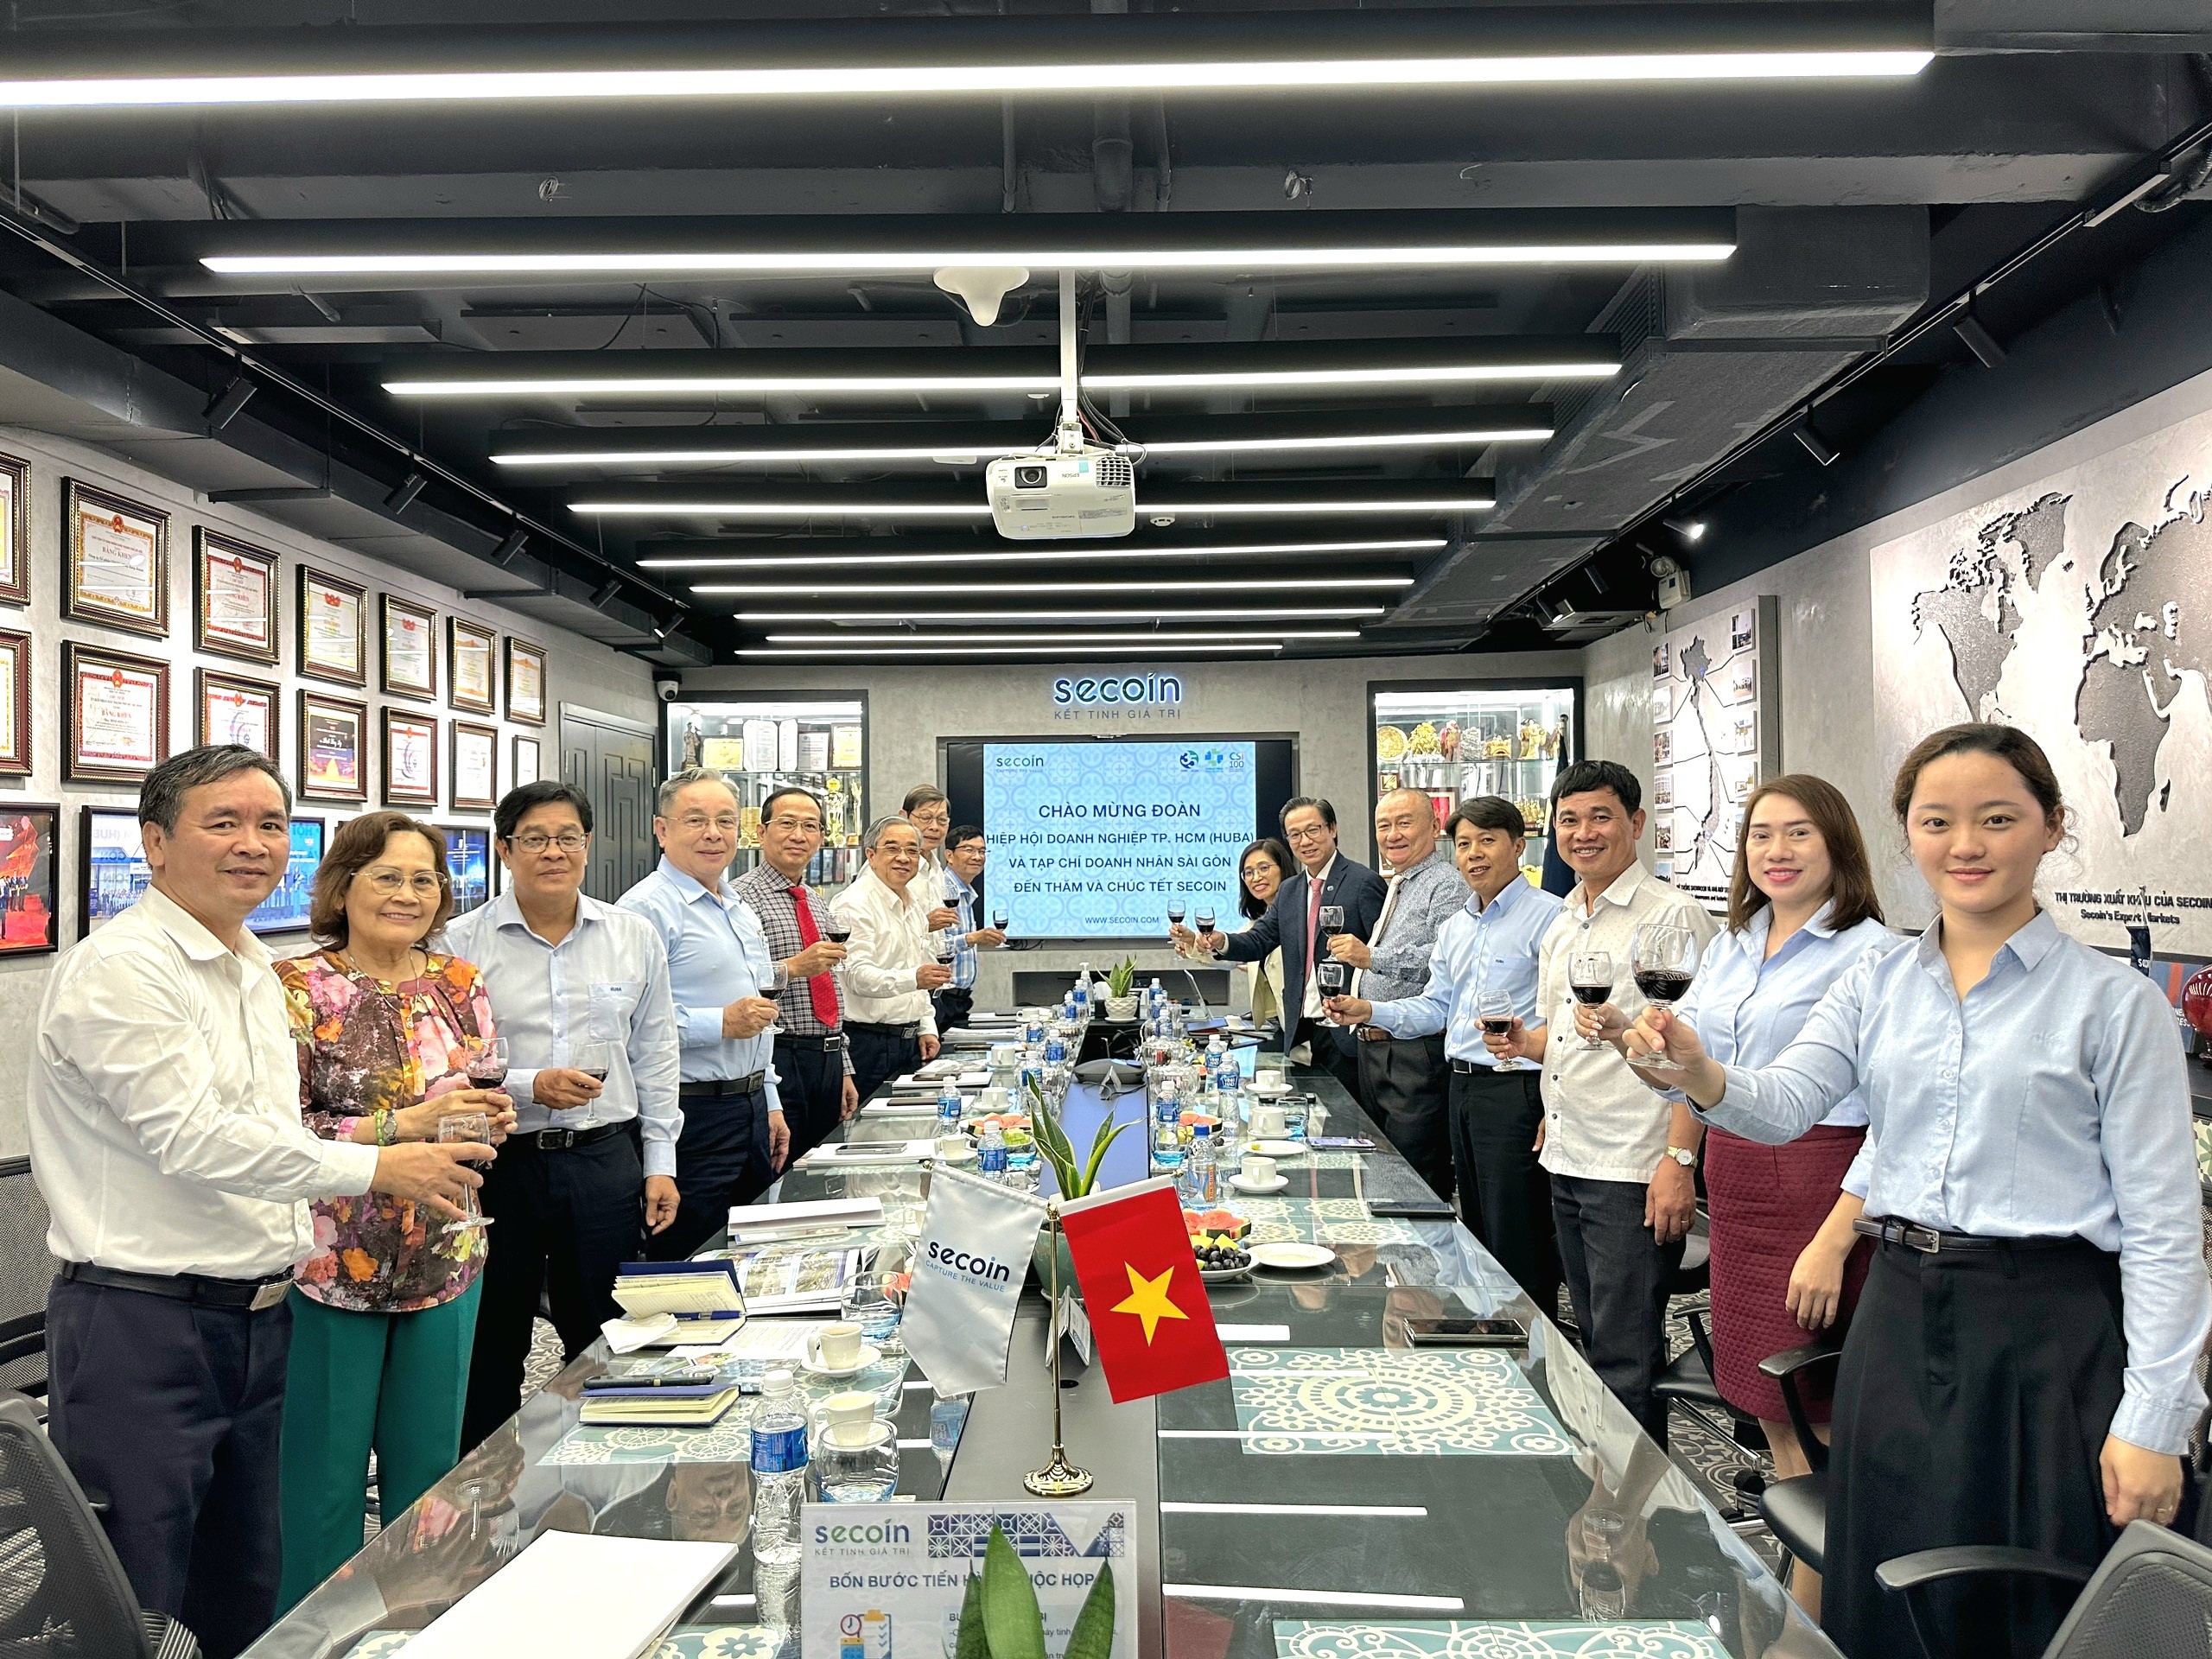 Hiệp hội Doanh nghiệp TP. HCM (HUBA) và Tạp chí Doanh nhân Sài Gòn thăm và chúc Tết Secoin